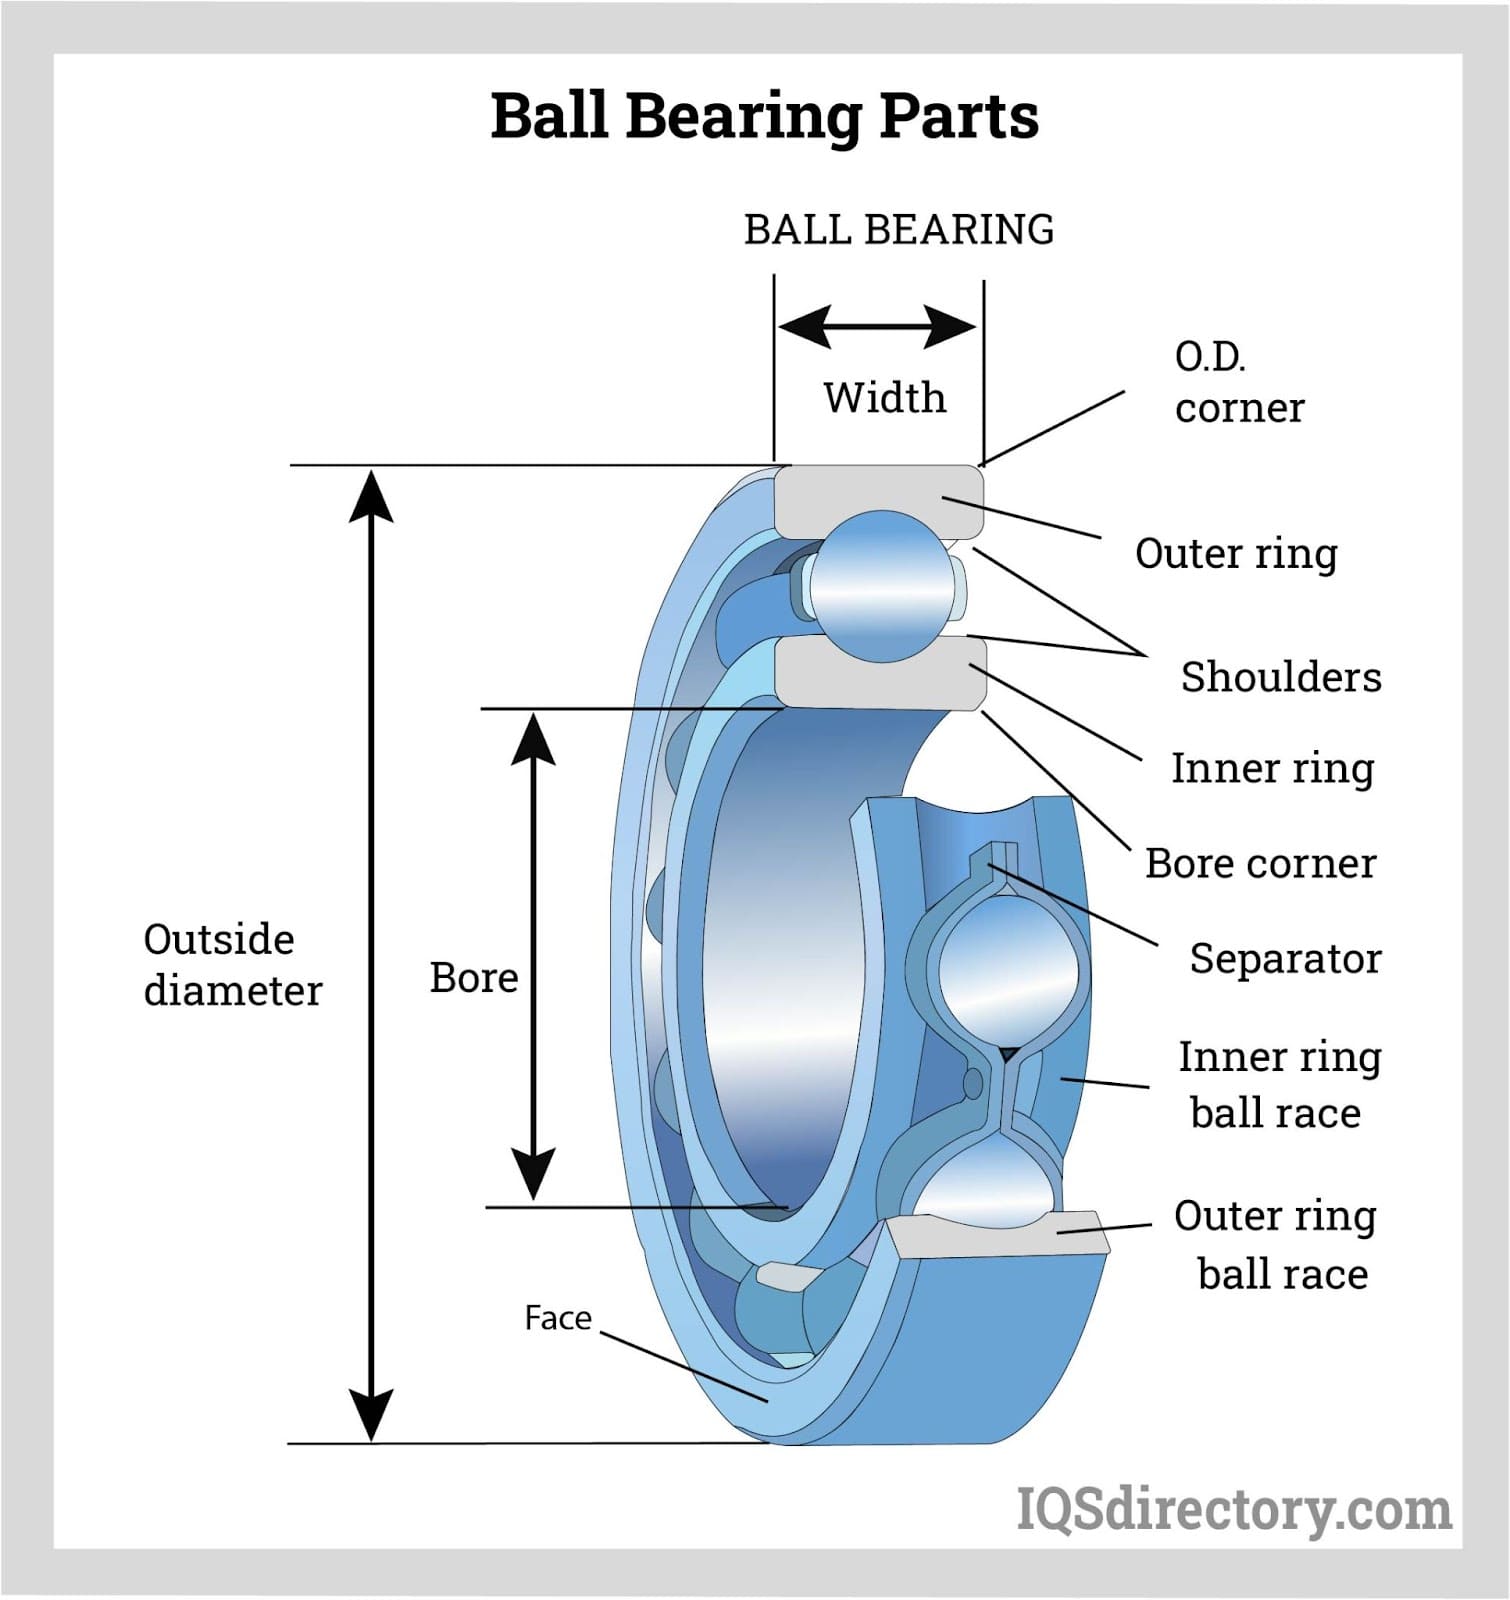  Ball Bearing Parts